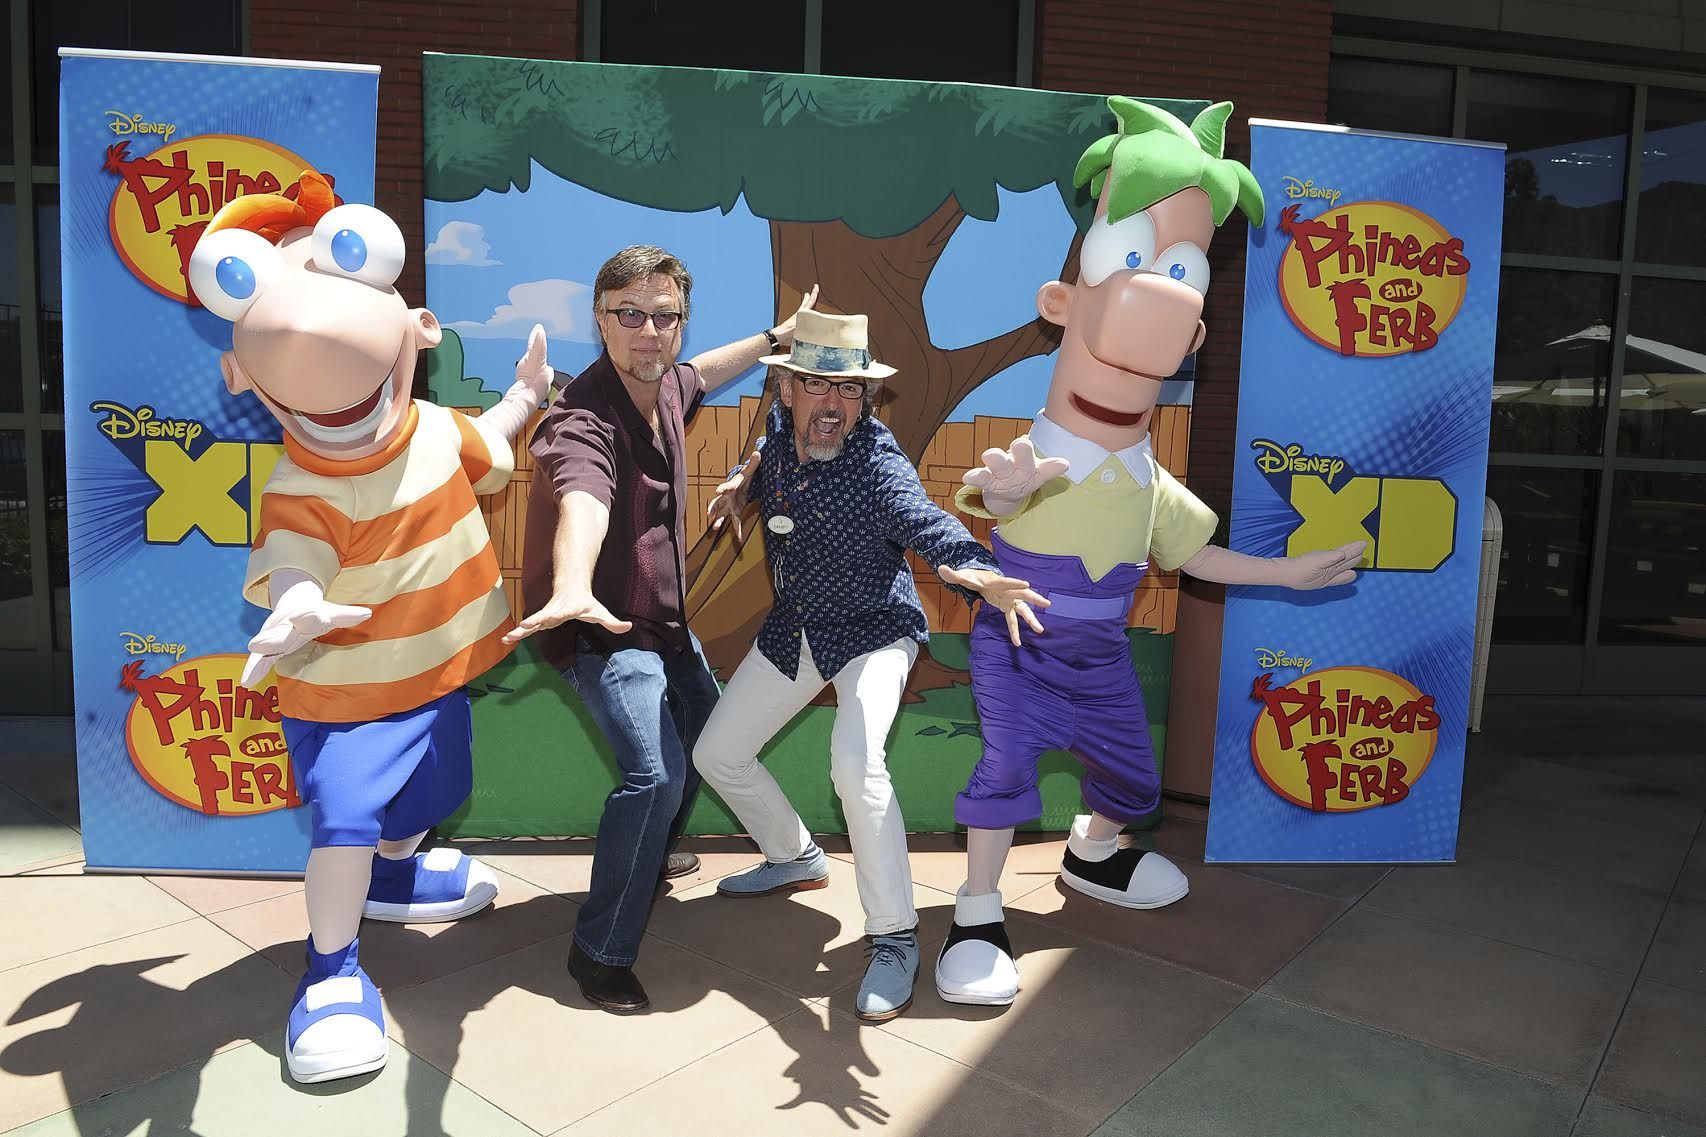 Stvoritelji filma ‘Phineas i Ferb’ opraštaju se kao pristupi ‘Posljednjeg dana ljeta’